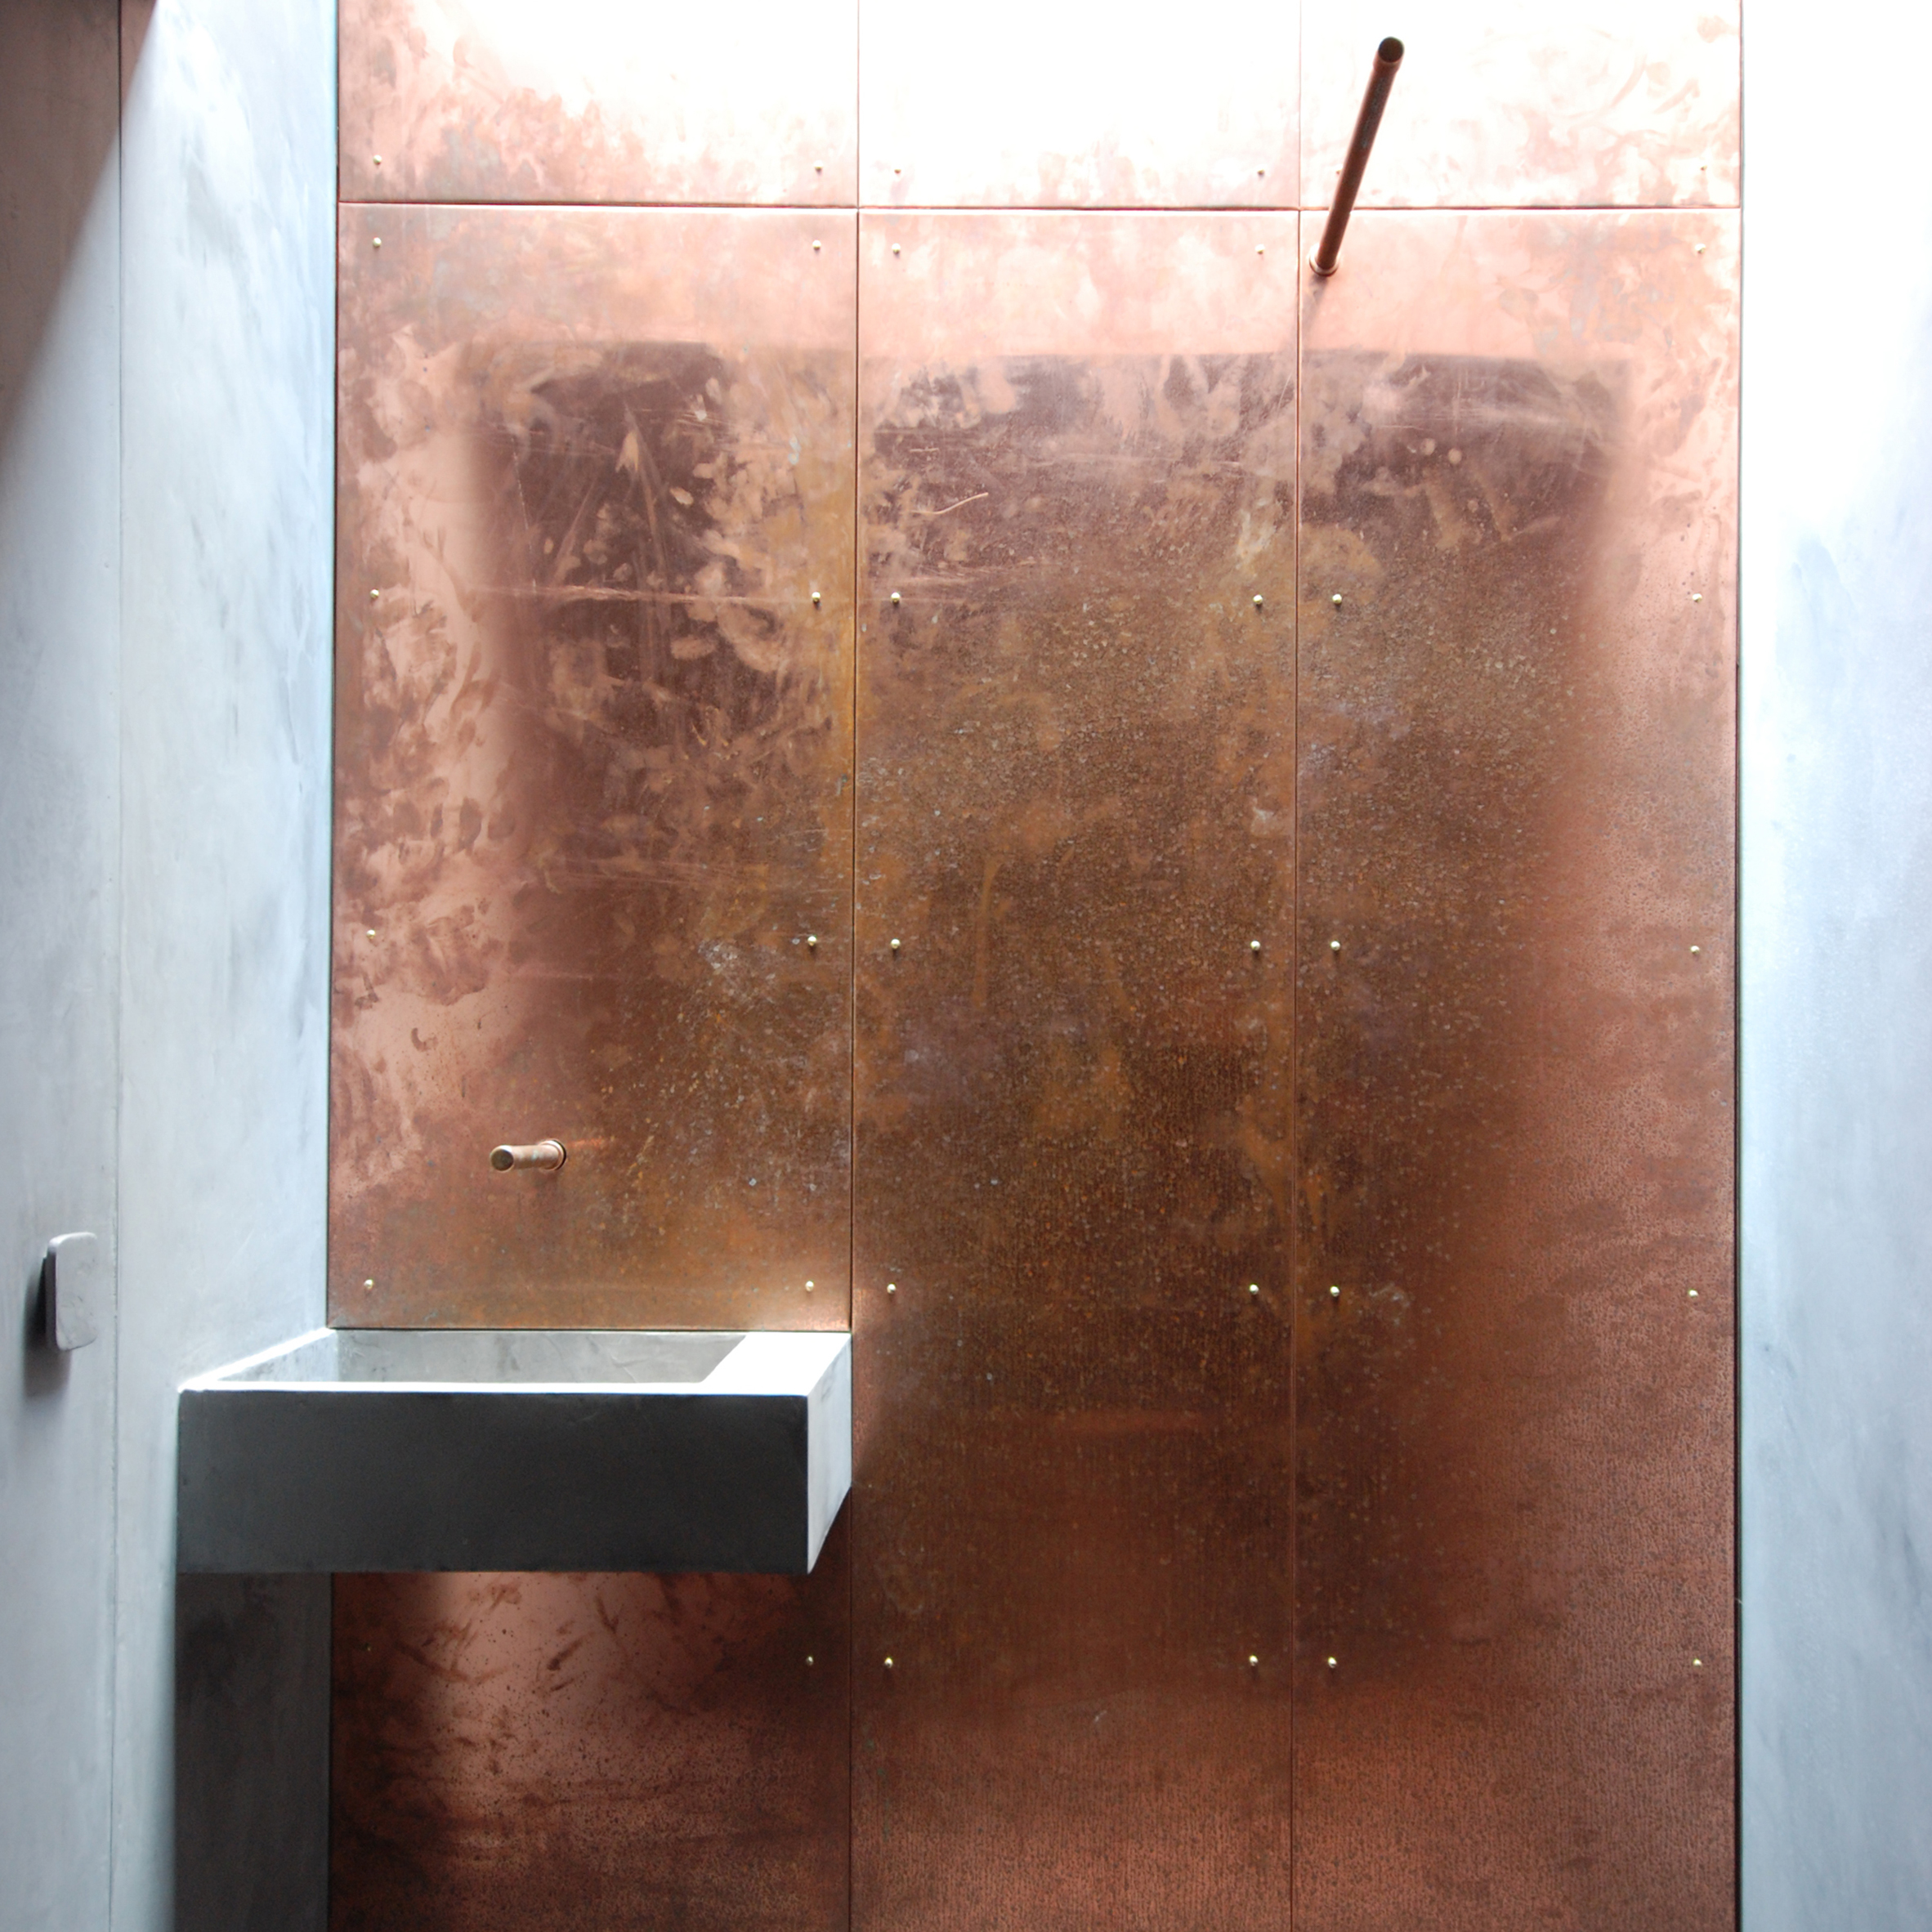 Copper clad studio by Stonewood features in Dezeen's Pinterest bathroom roundup